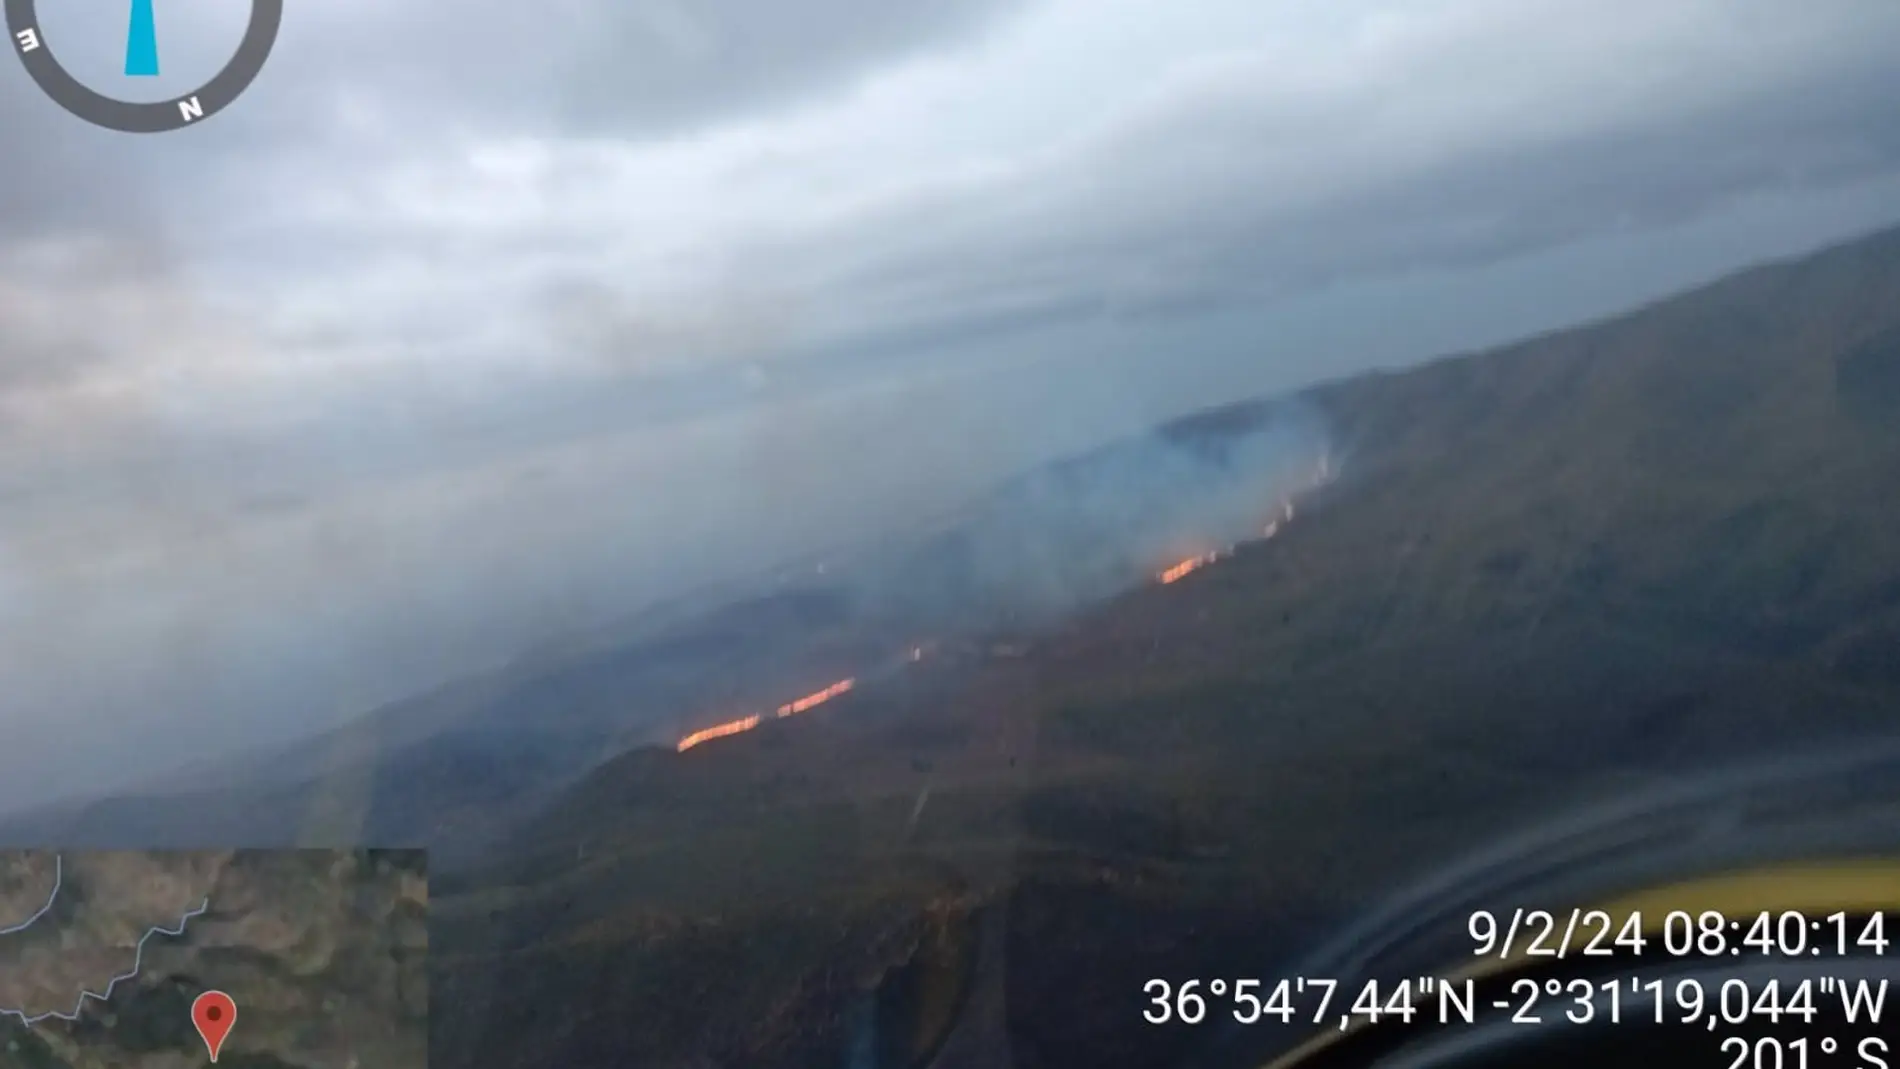 Incendio forestal en Enix (Almería)